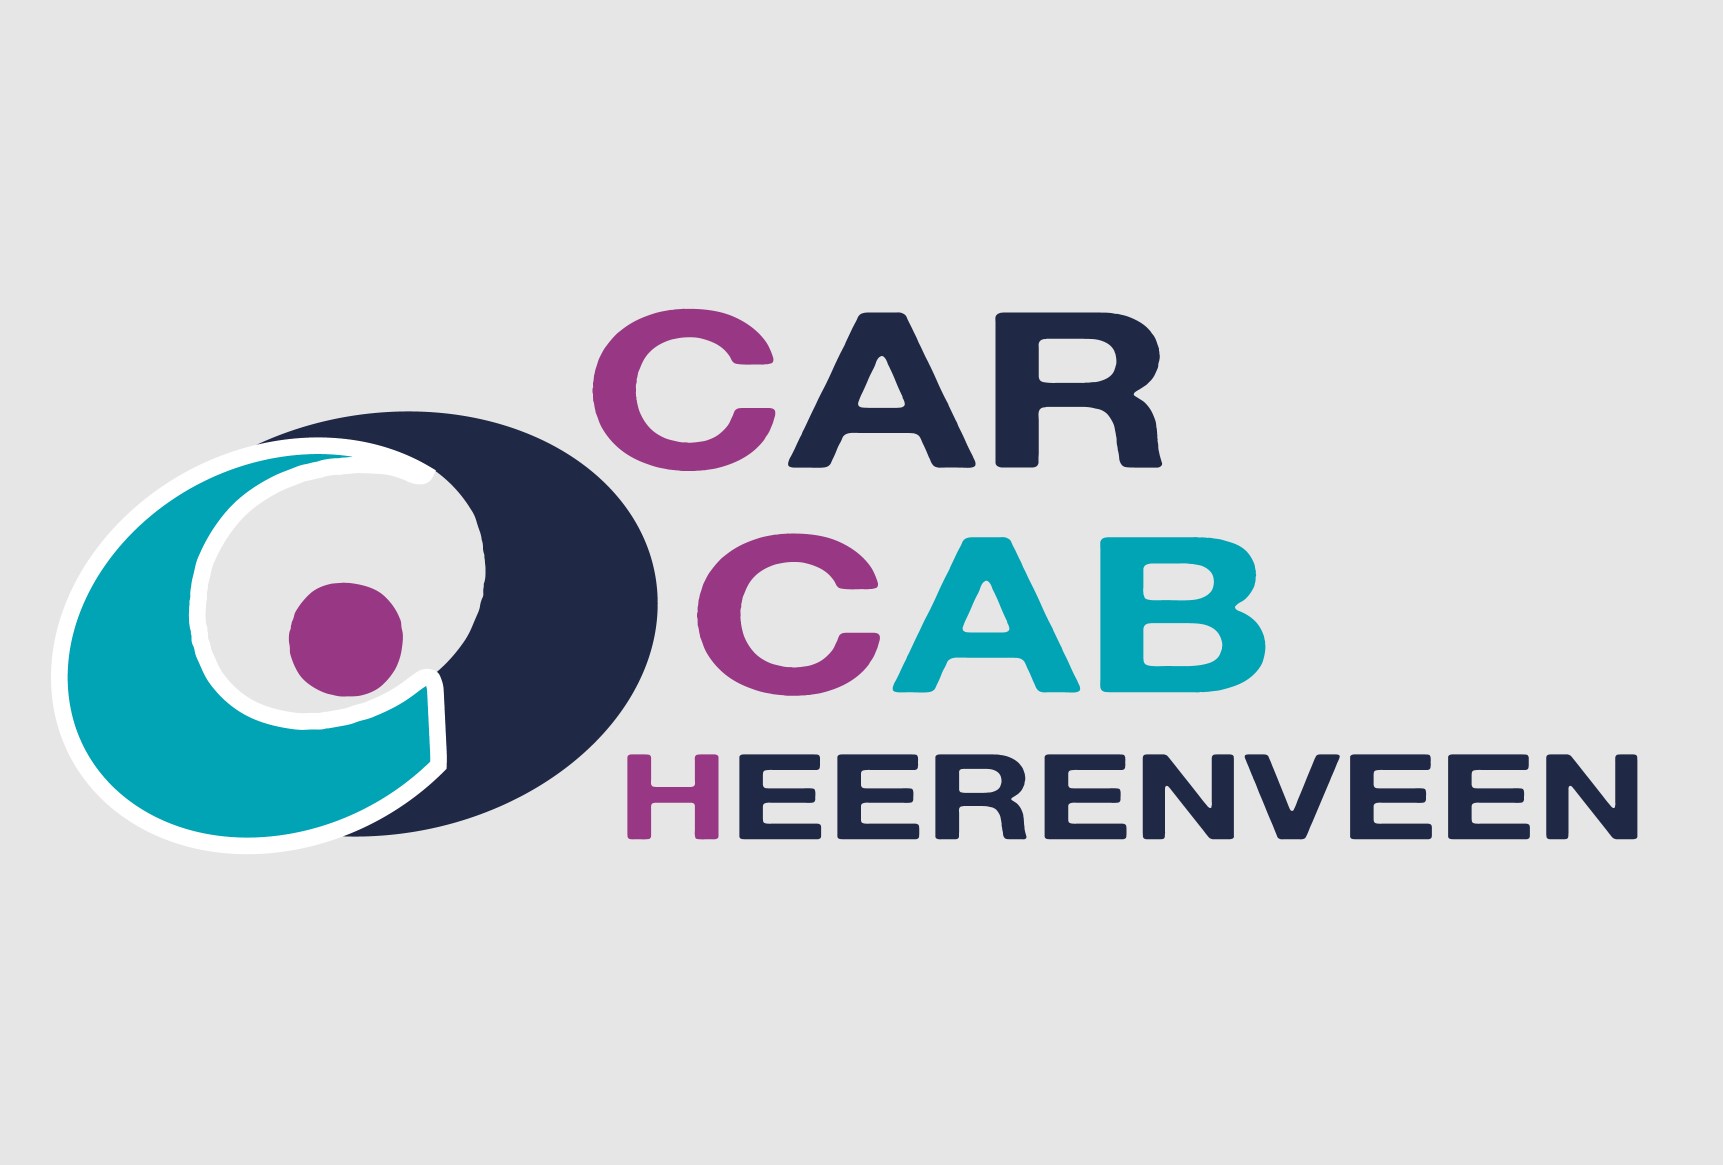 CarCab Heerenveen